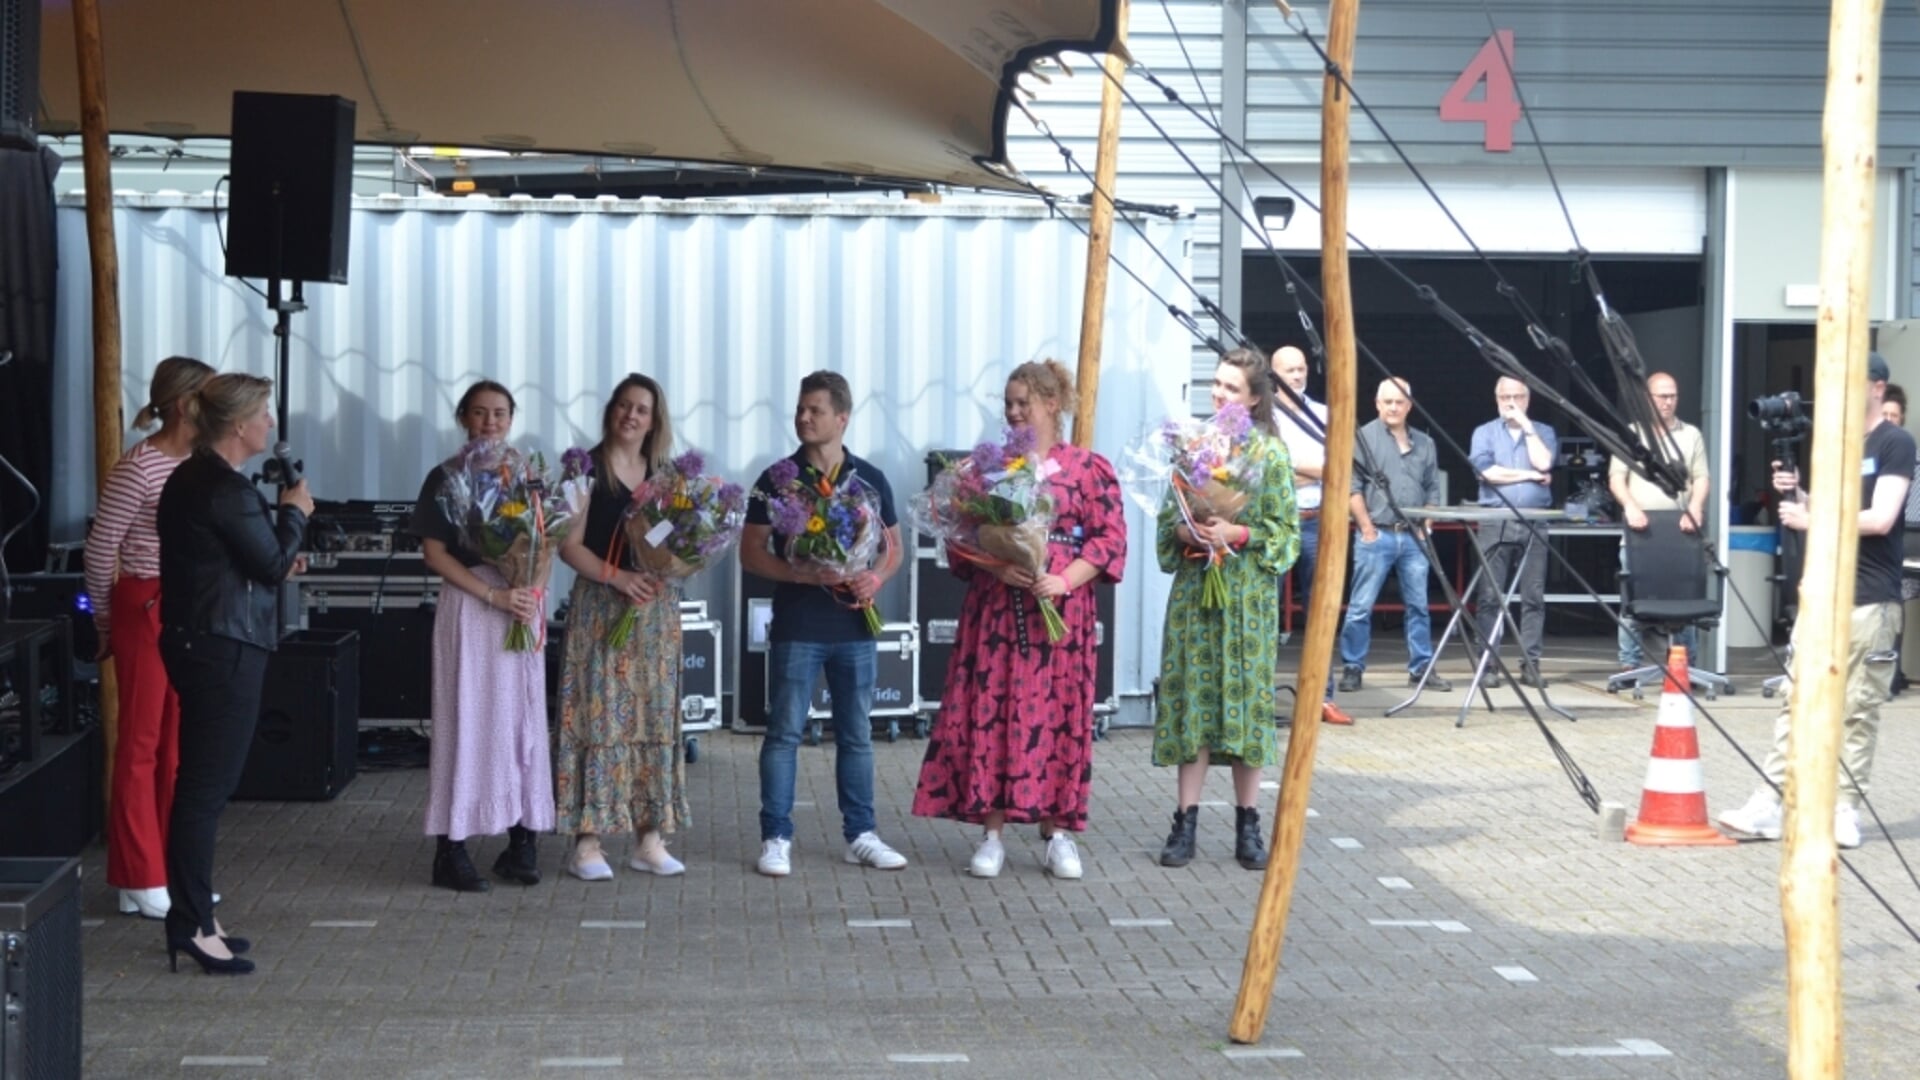 De initiatiefnemers van WSD Kwikstart ontvangen een penning en bos bloemen uit handen van wethouder Mariëlle van Alphen. (Foto's: Merel Cooijmans)